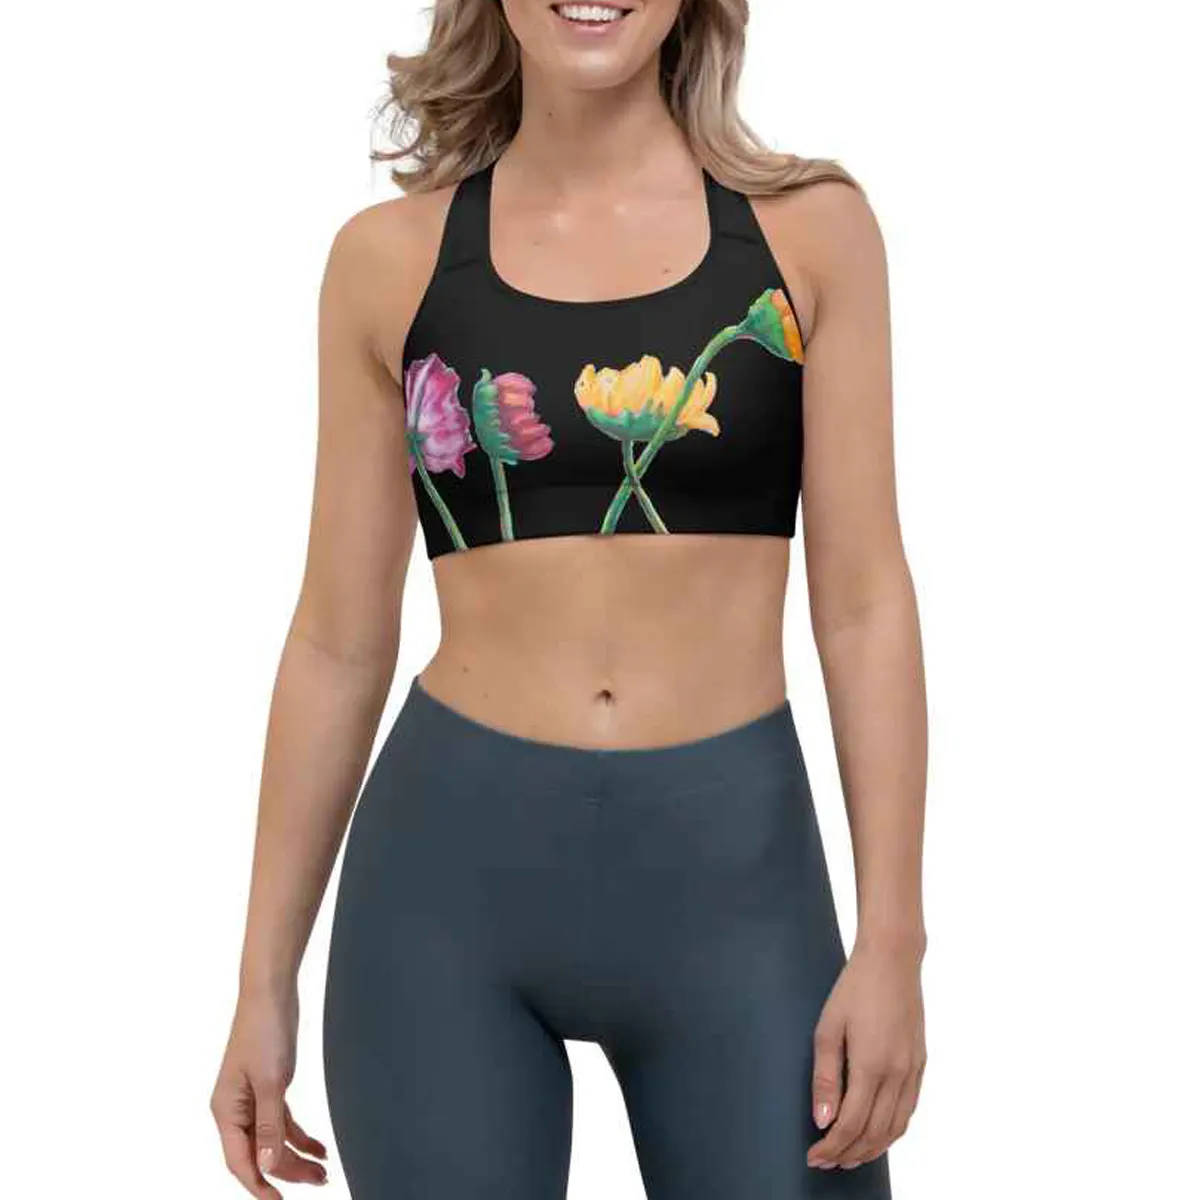 All'ingrosso Fitness Activewear personalizzato da donna reggiseno Yoga serie fiore di belle arti reggiseno sportivo donna Push up comodo.